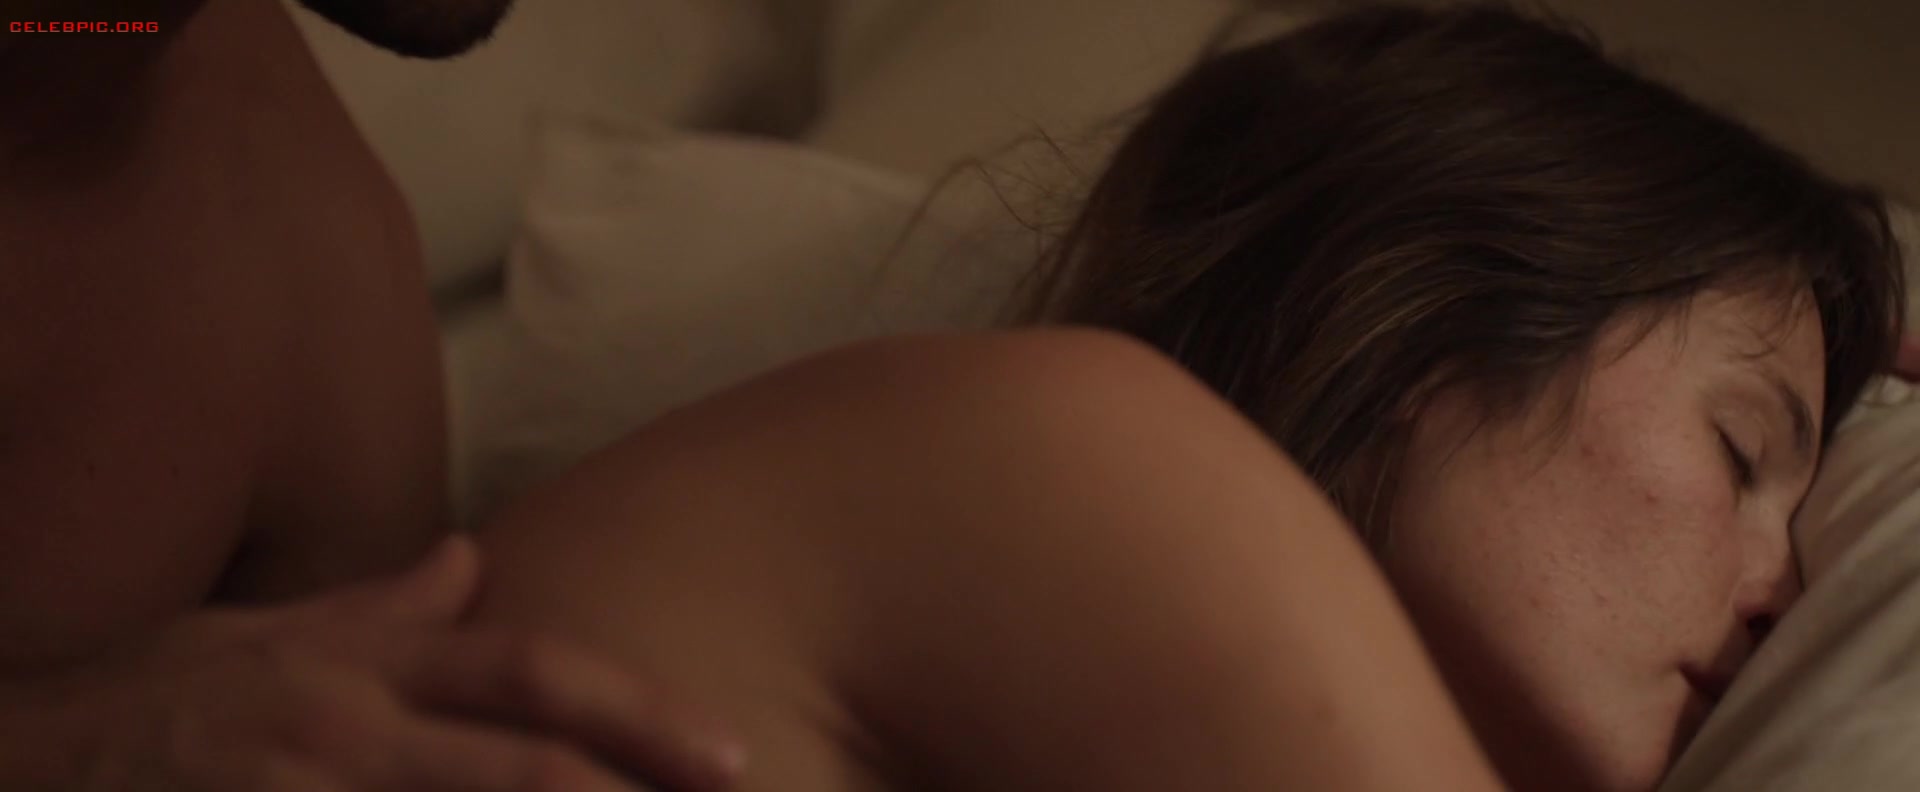 Gemma Arterton - The Escape 1080p (1) 0770.jpg